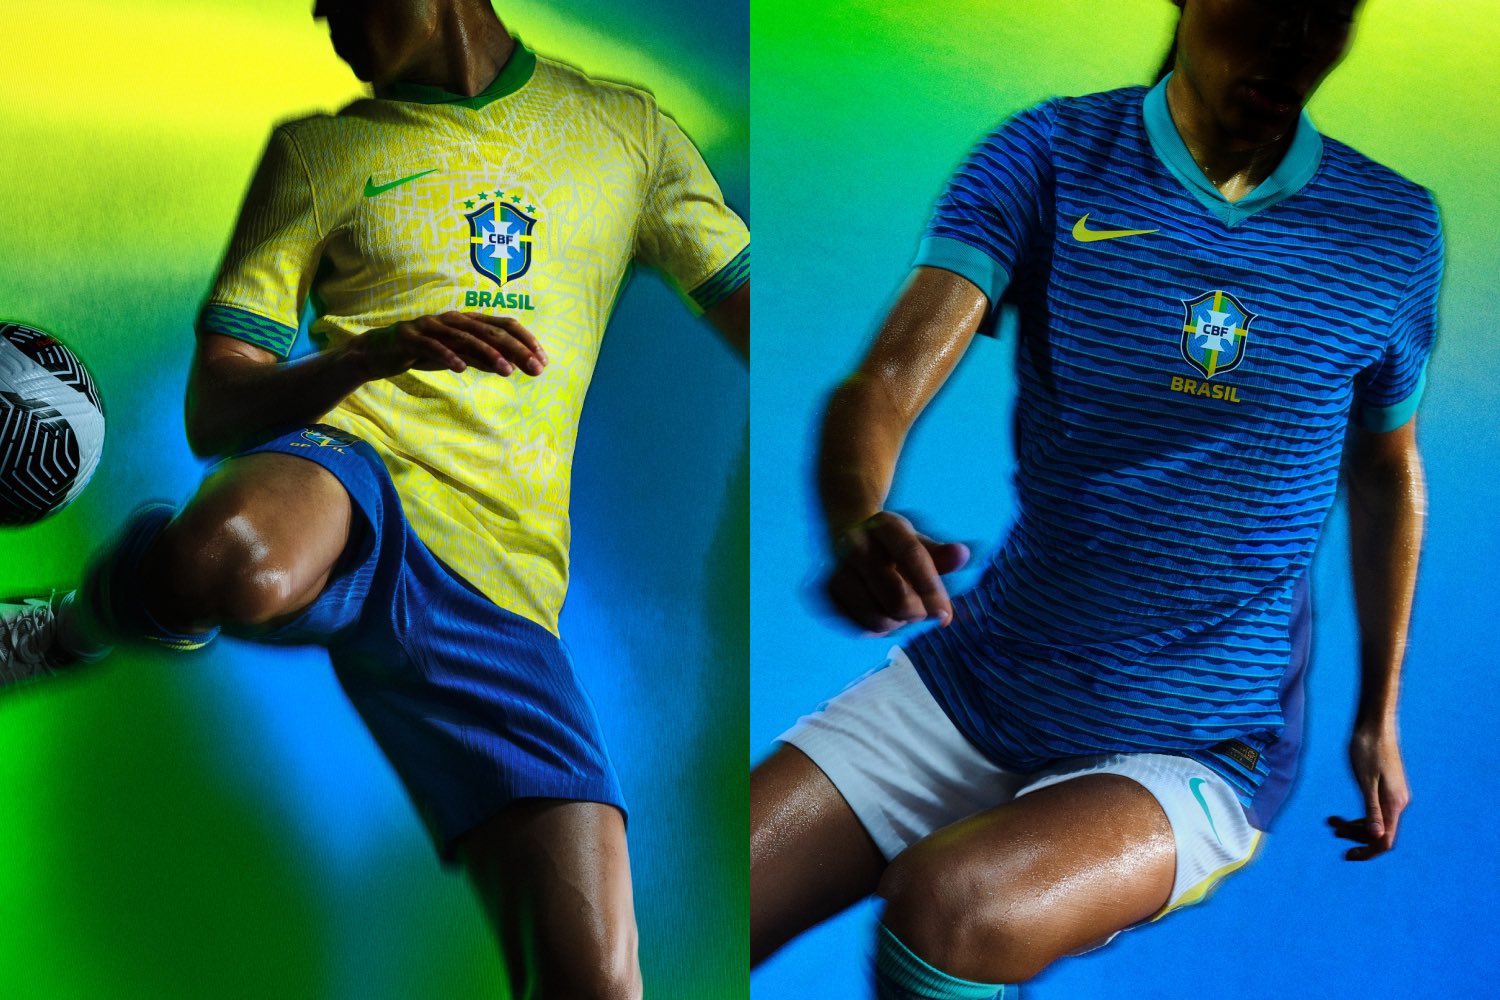  Seleção brasileira: veja imagens dos novos uniformes do Brasil 